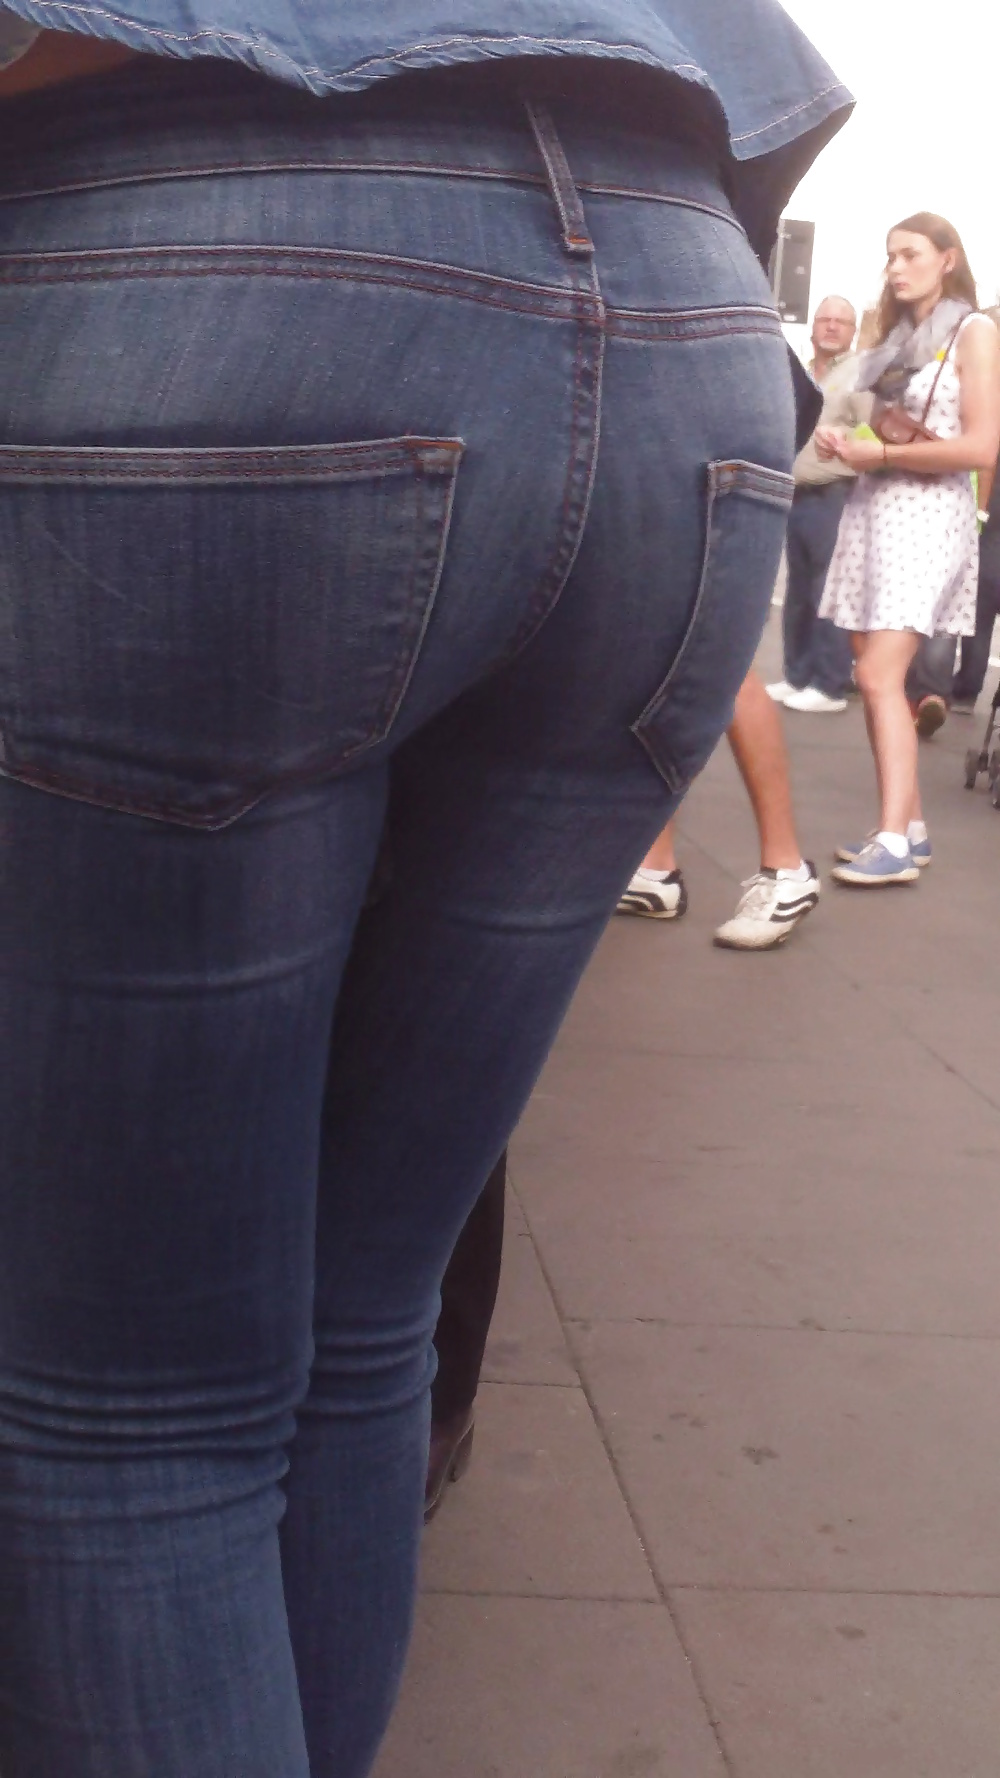 Popular teen girls ass & butt in jeans Part 6 #32010088